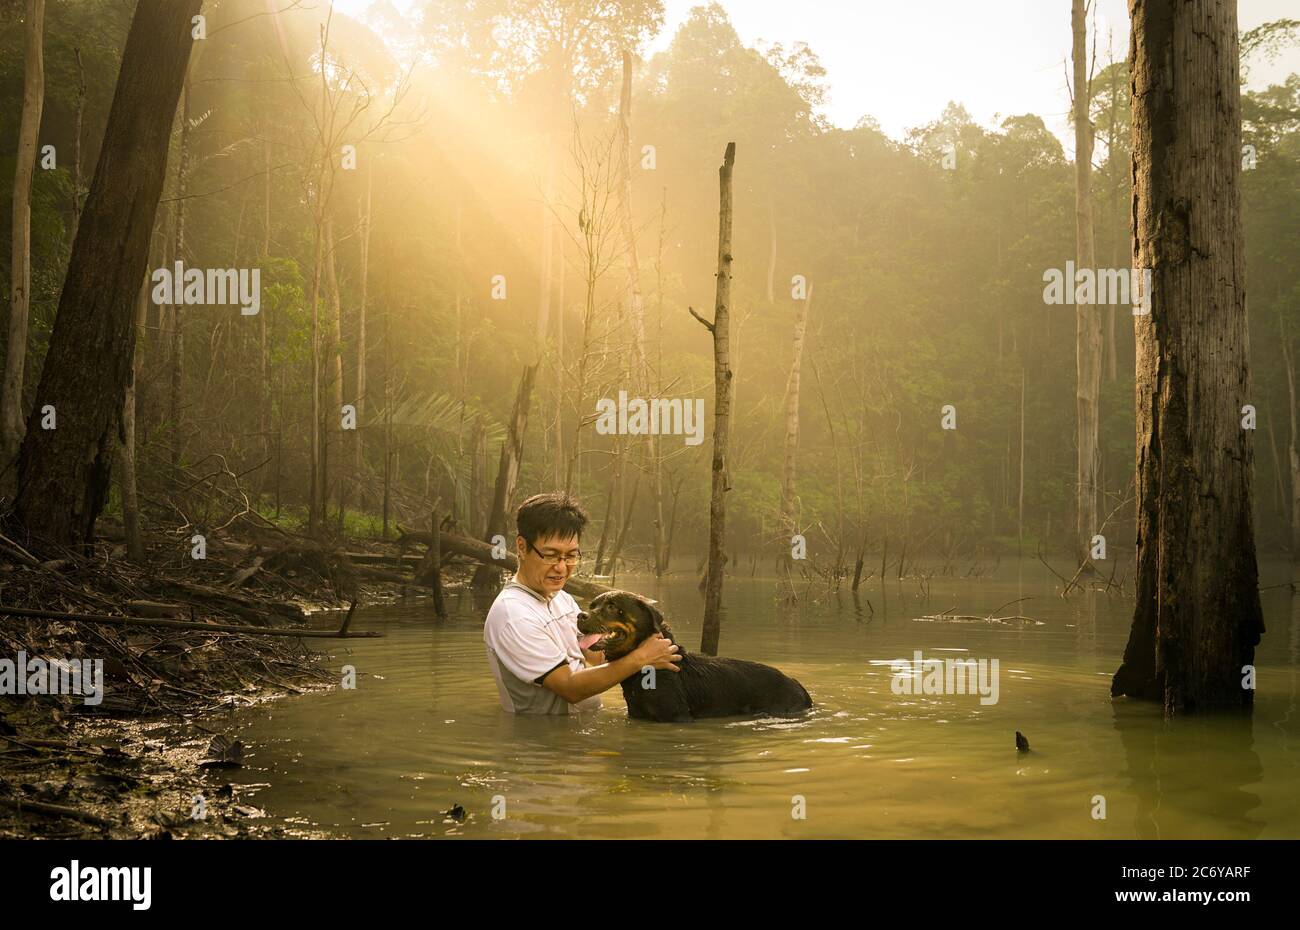 Mann mit seinem rottweiler Hund im See mit schönen Morgen Sonnenstrahl. Konzept der Bondzeit. Stockfoto